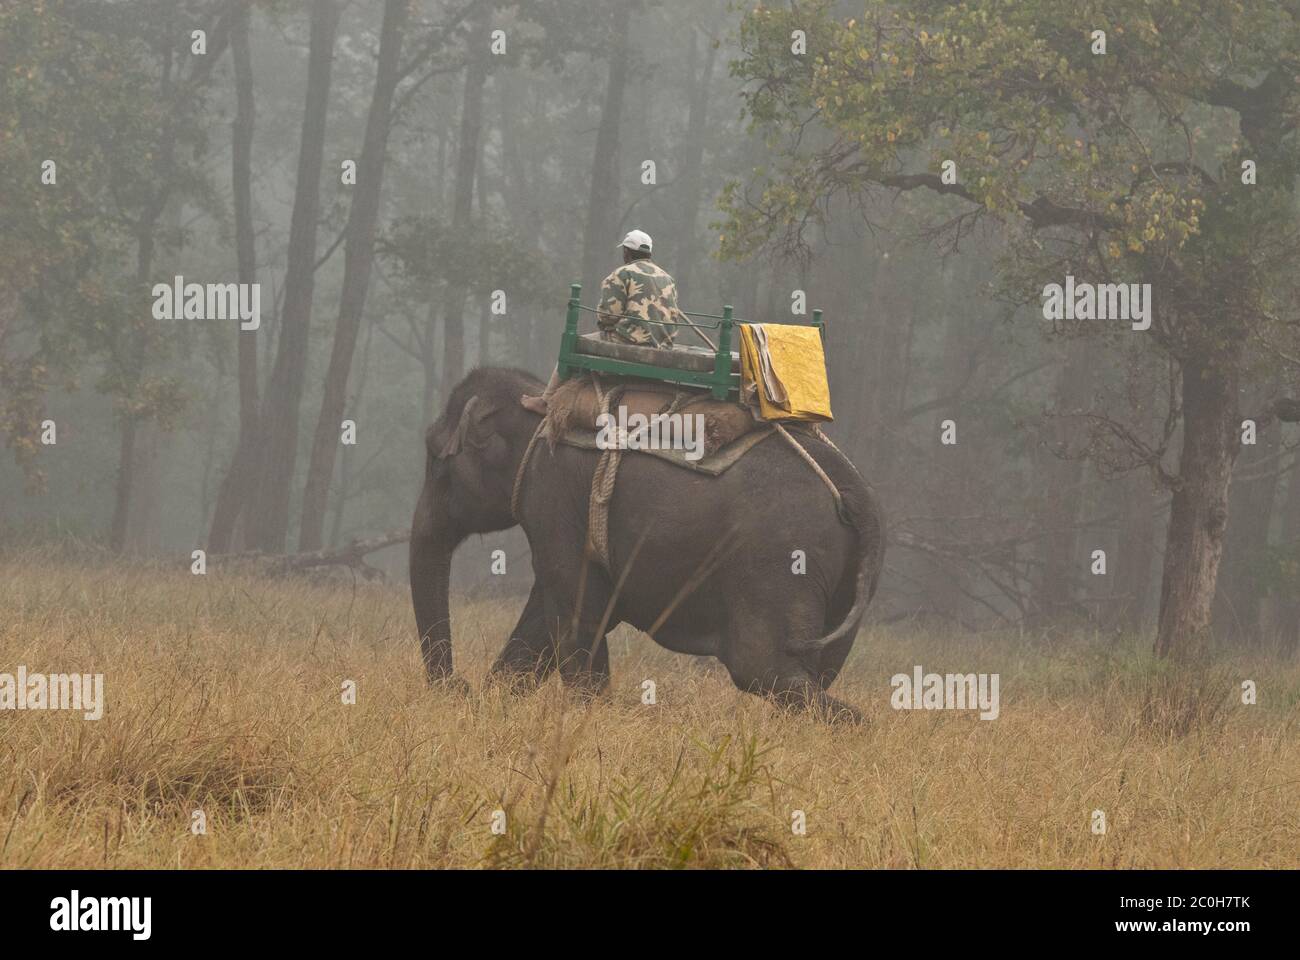 Garde-forestier patrouilant sur l'éléphant dans le parc national de Bandhavgarh, Inde Banque D'Images